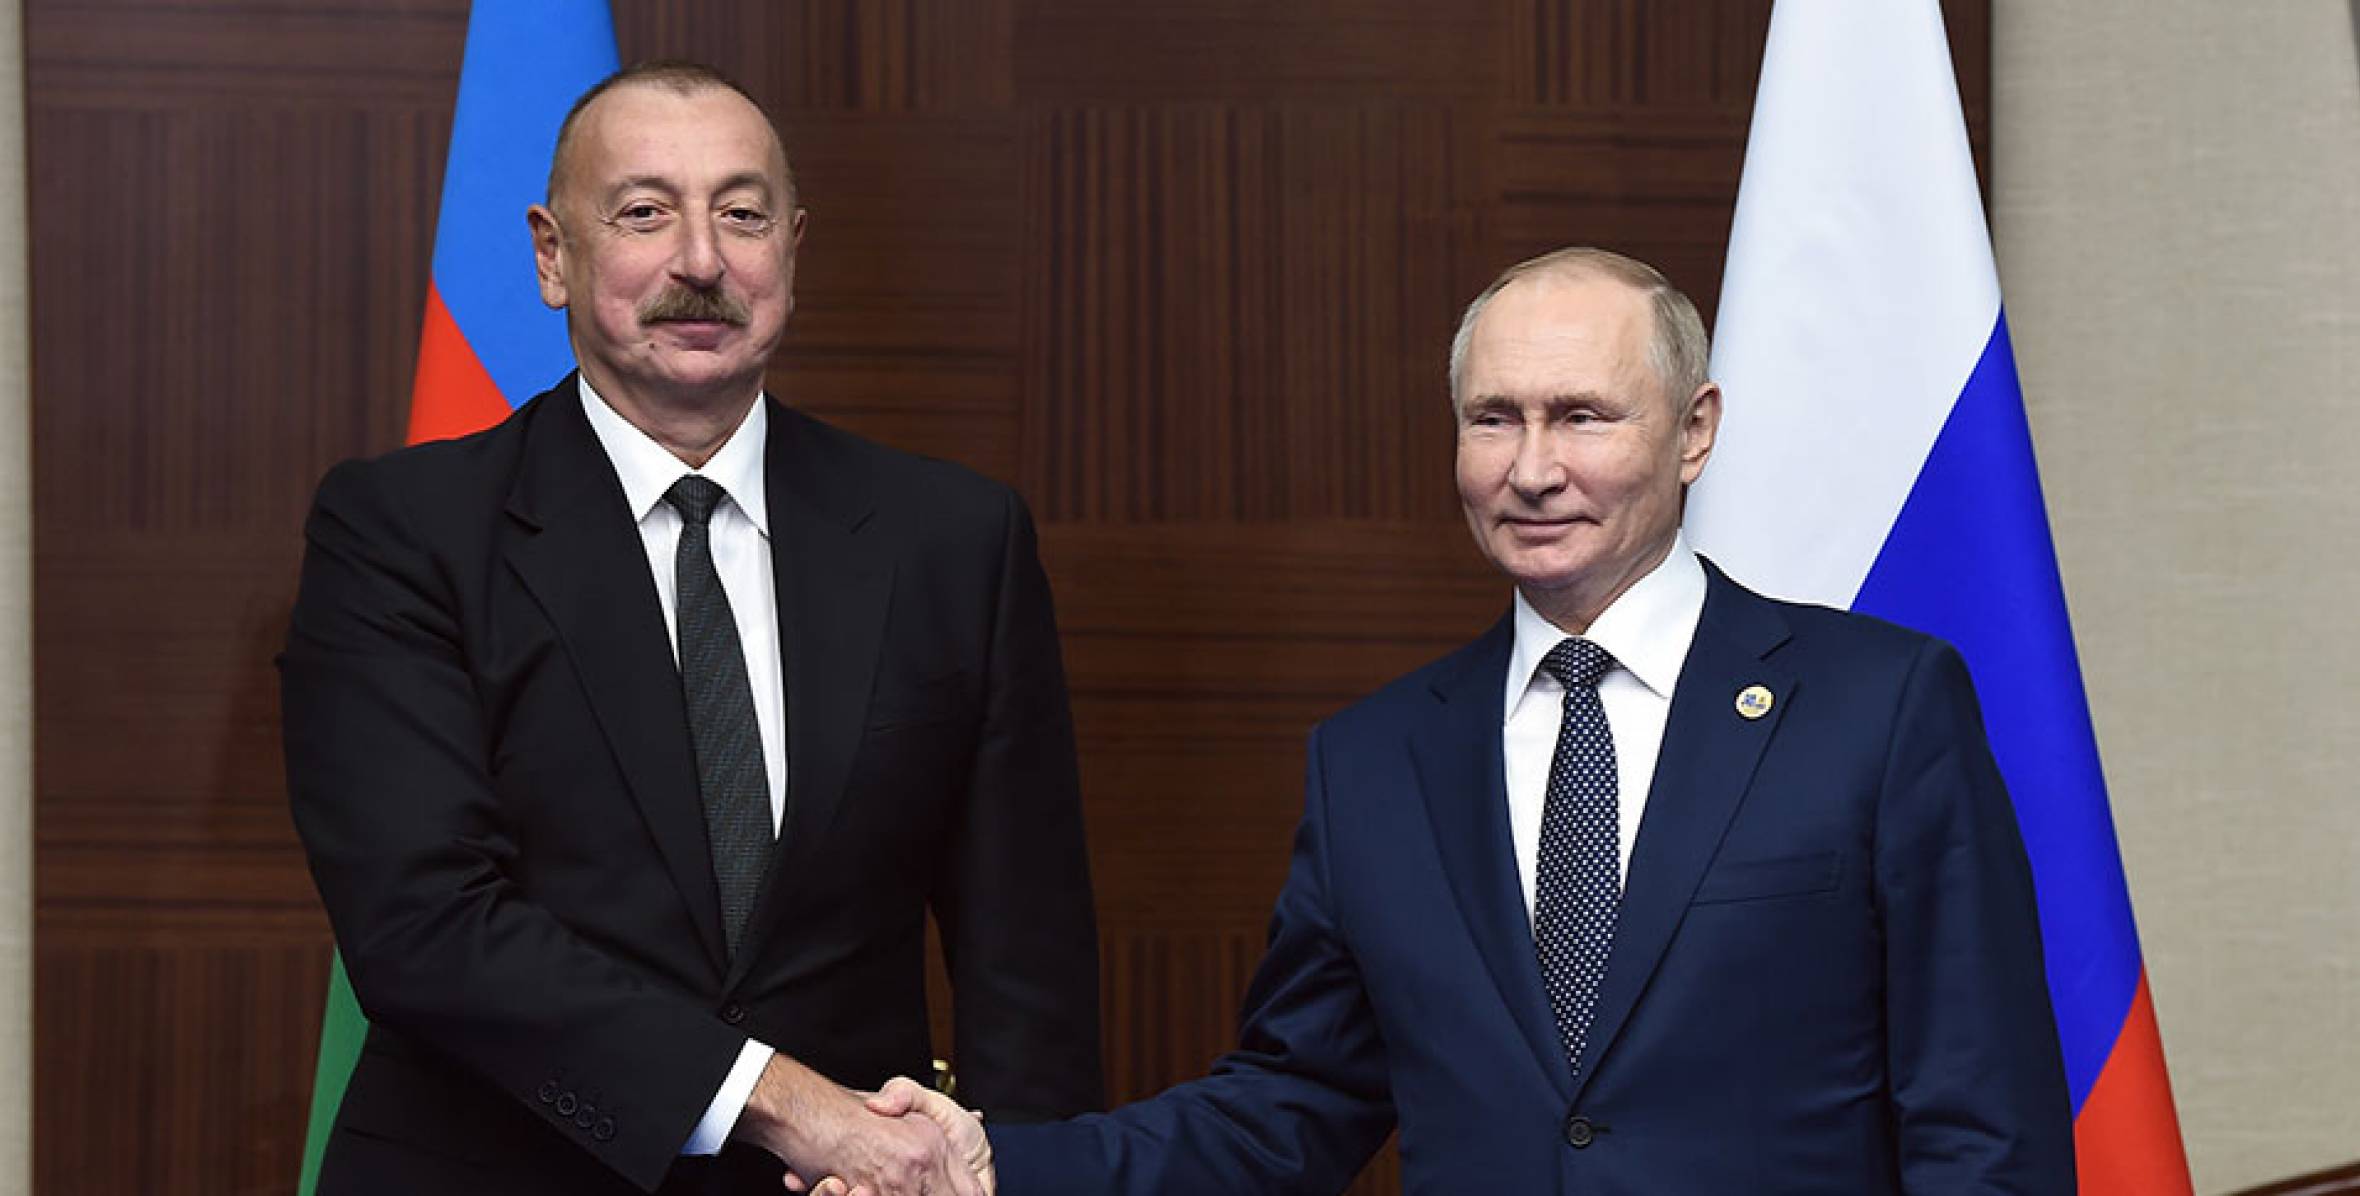 В Астане состоялась встреча Ильхама Алиева с Президентом России Владимиром Путиным